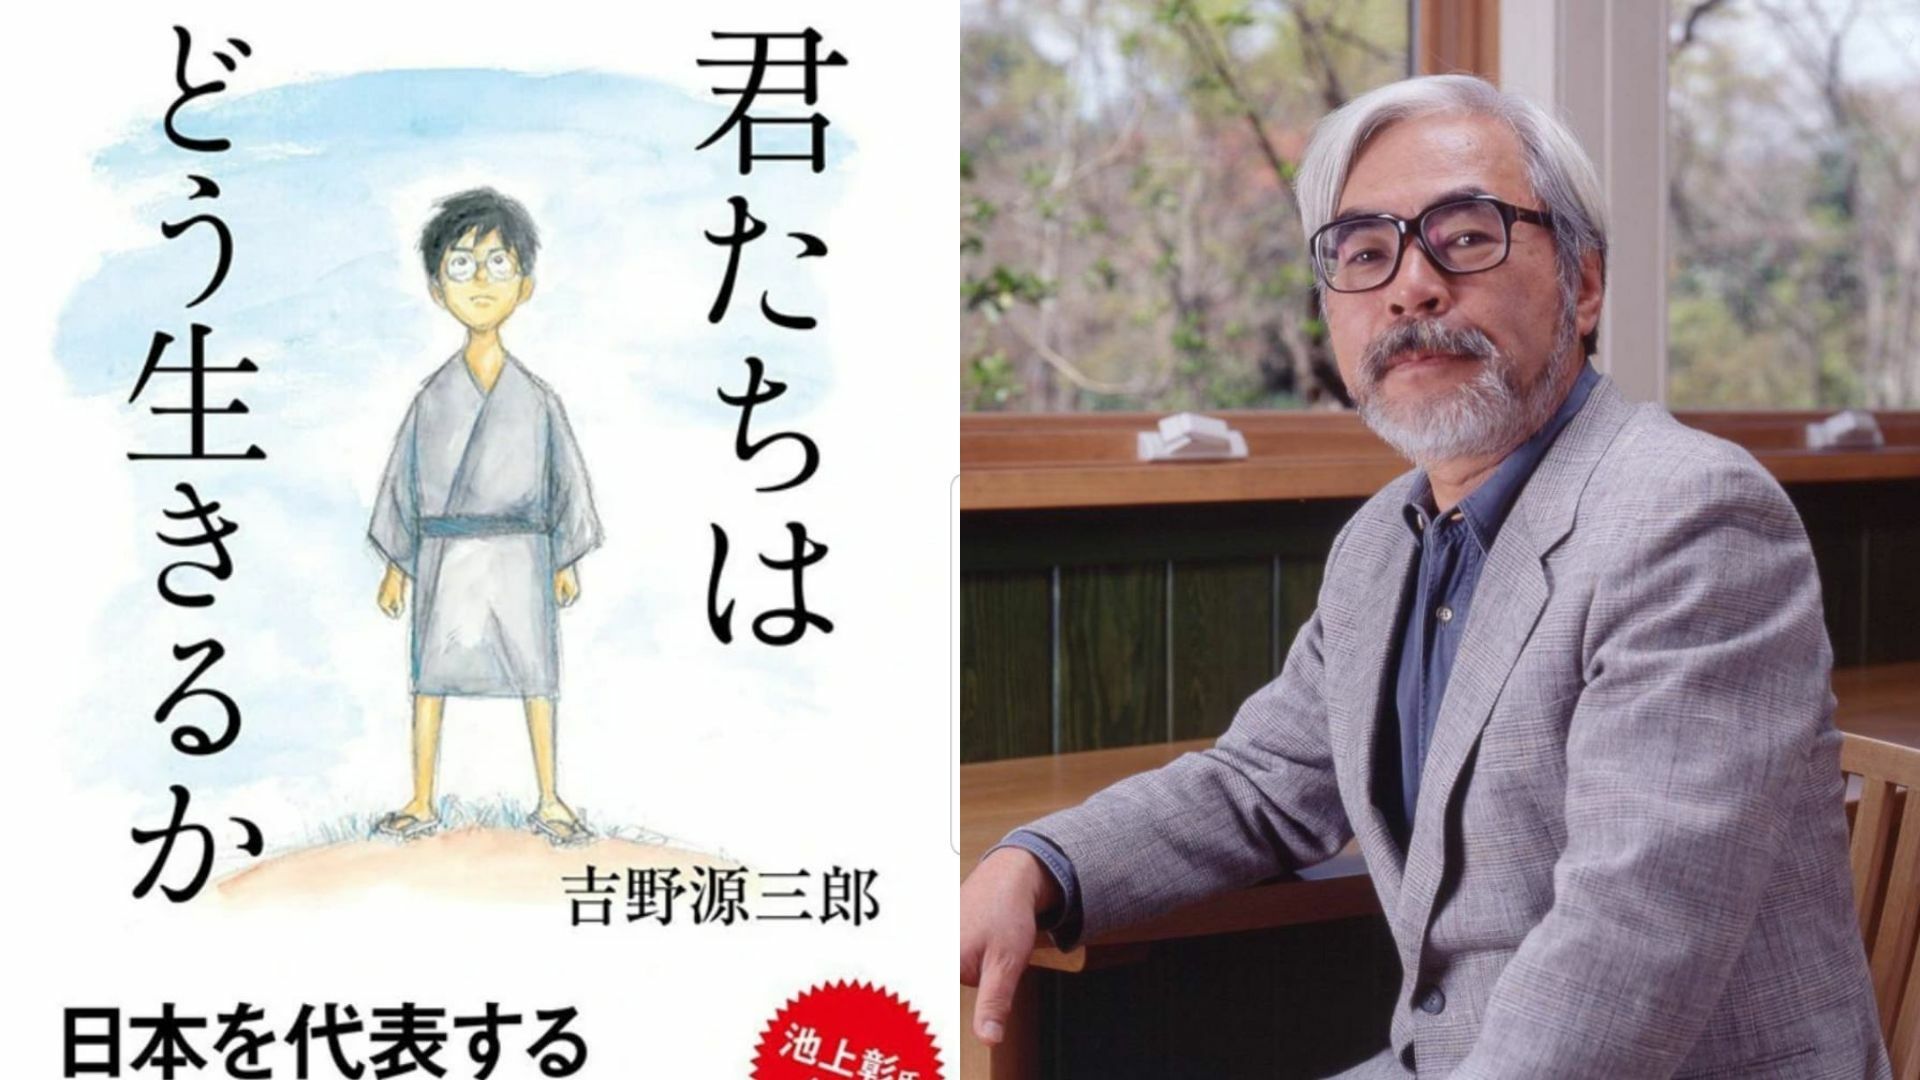 Hayao Miyazaki confirma que está de vuelta de su 'retiro' para crear y  dirigir su nueva película